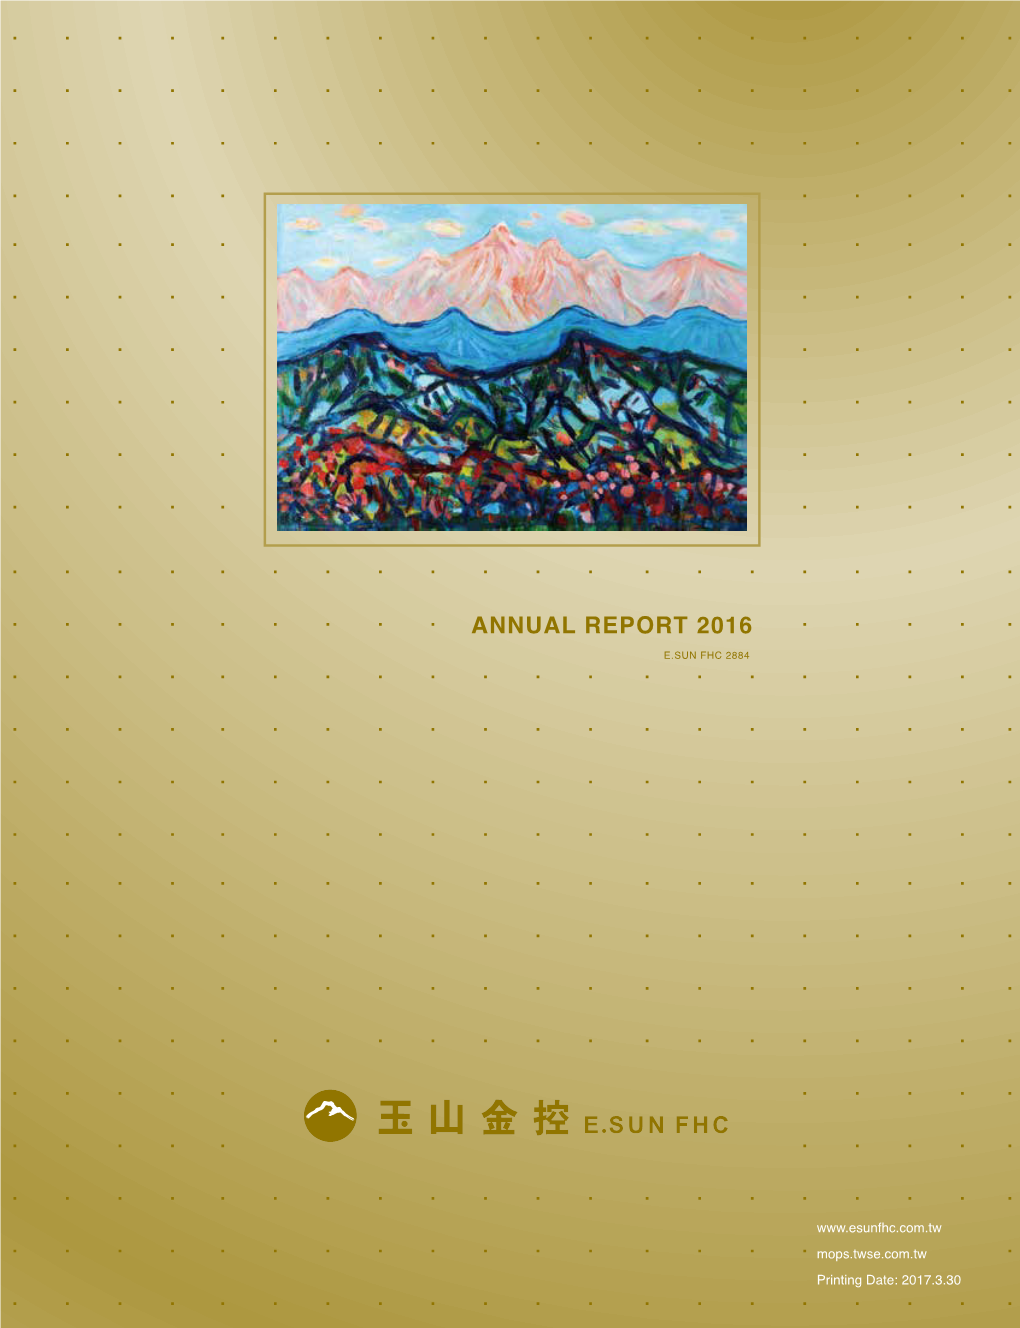 Annual Report 2016 E.Sun Fhc 2884